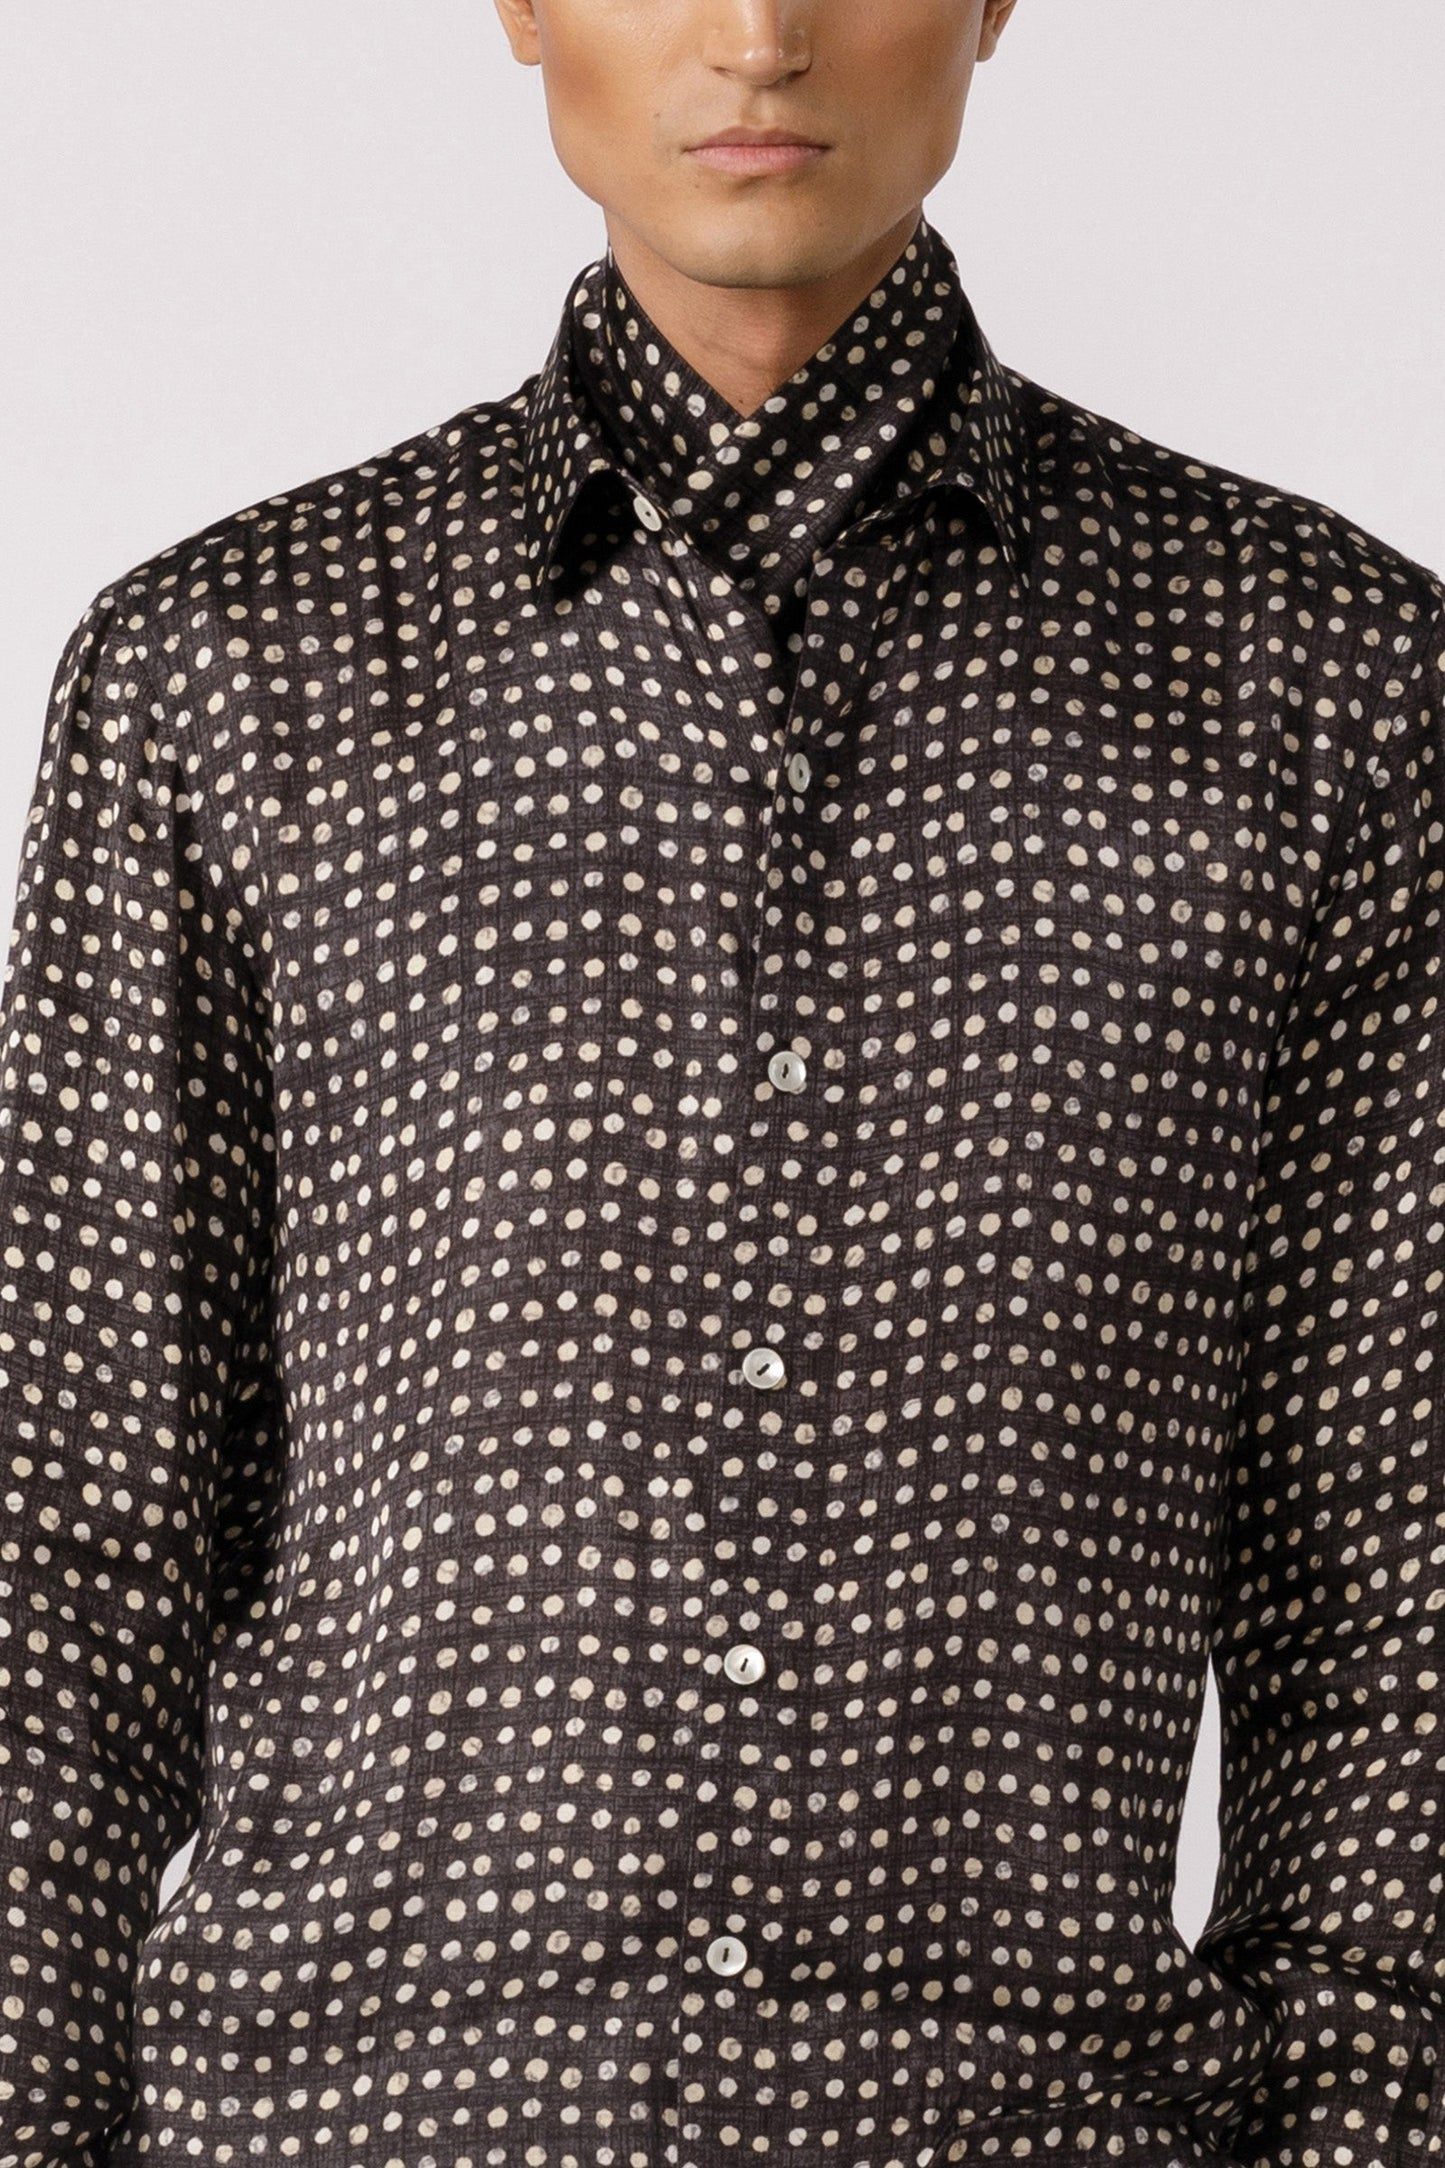 Polka dot printed shirt